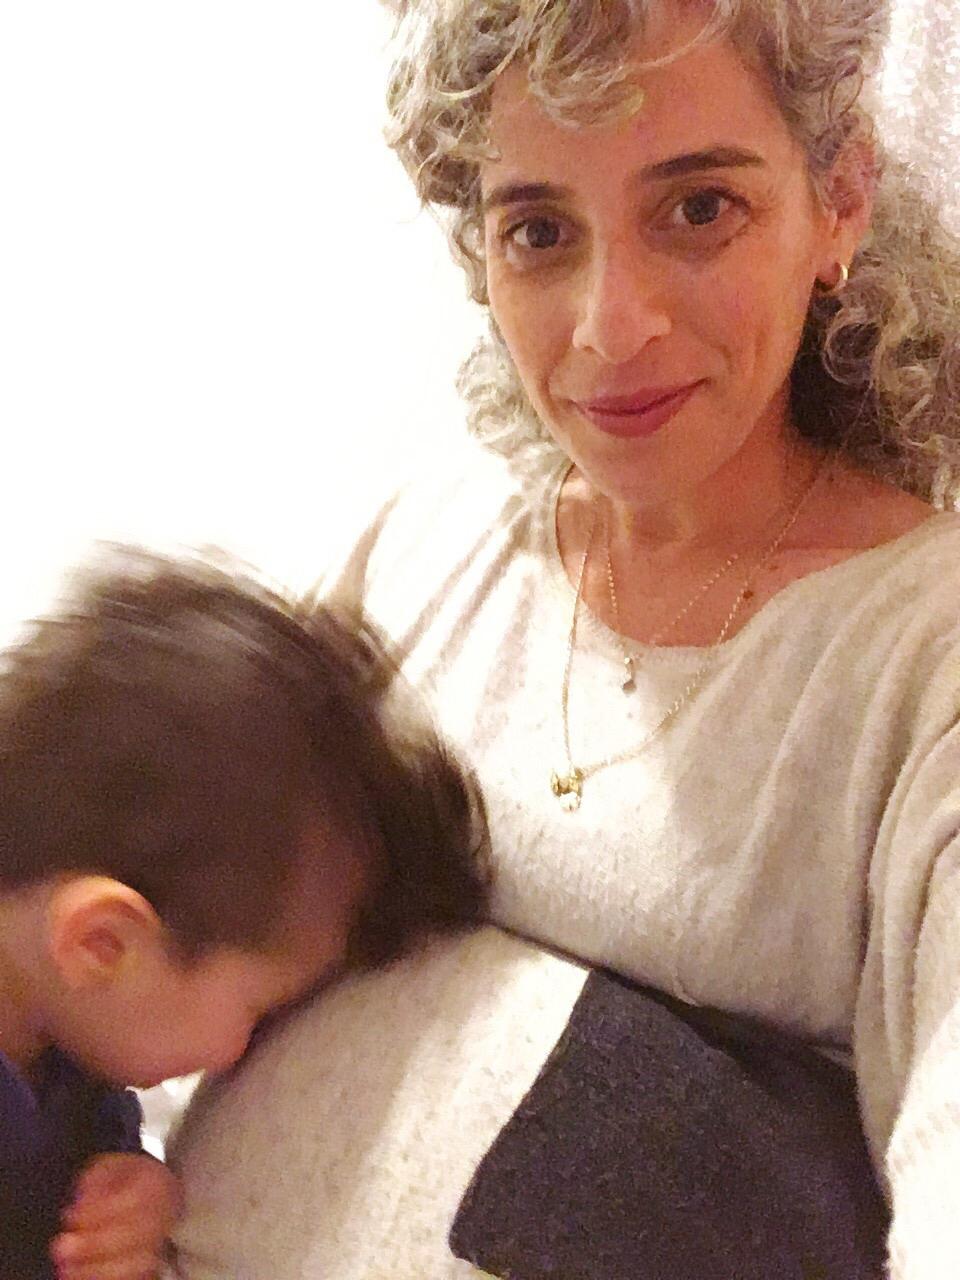 אורית הורוביץ בר-עם בהיריון הפונדקאי, עם בנה | באדיבות אורית